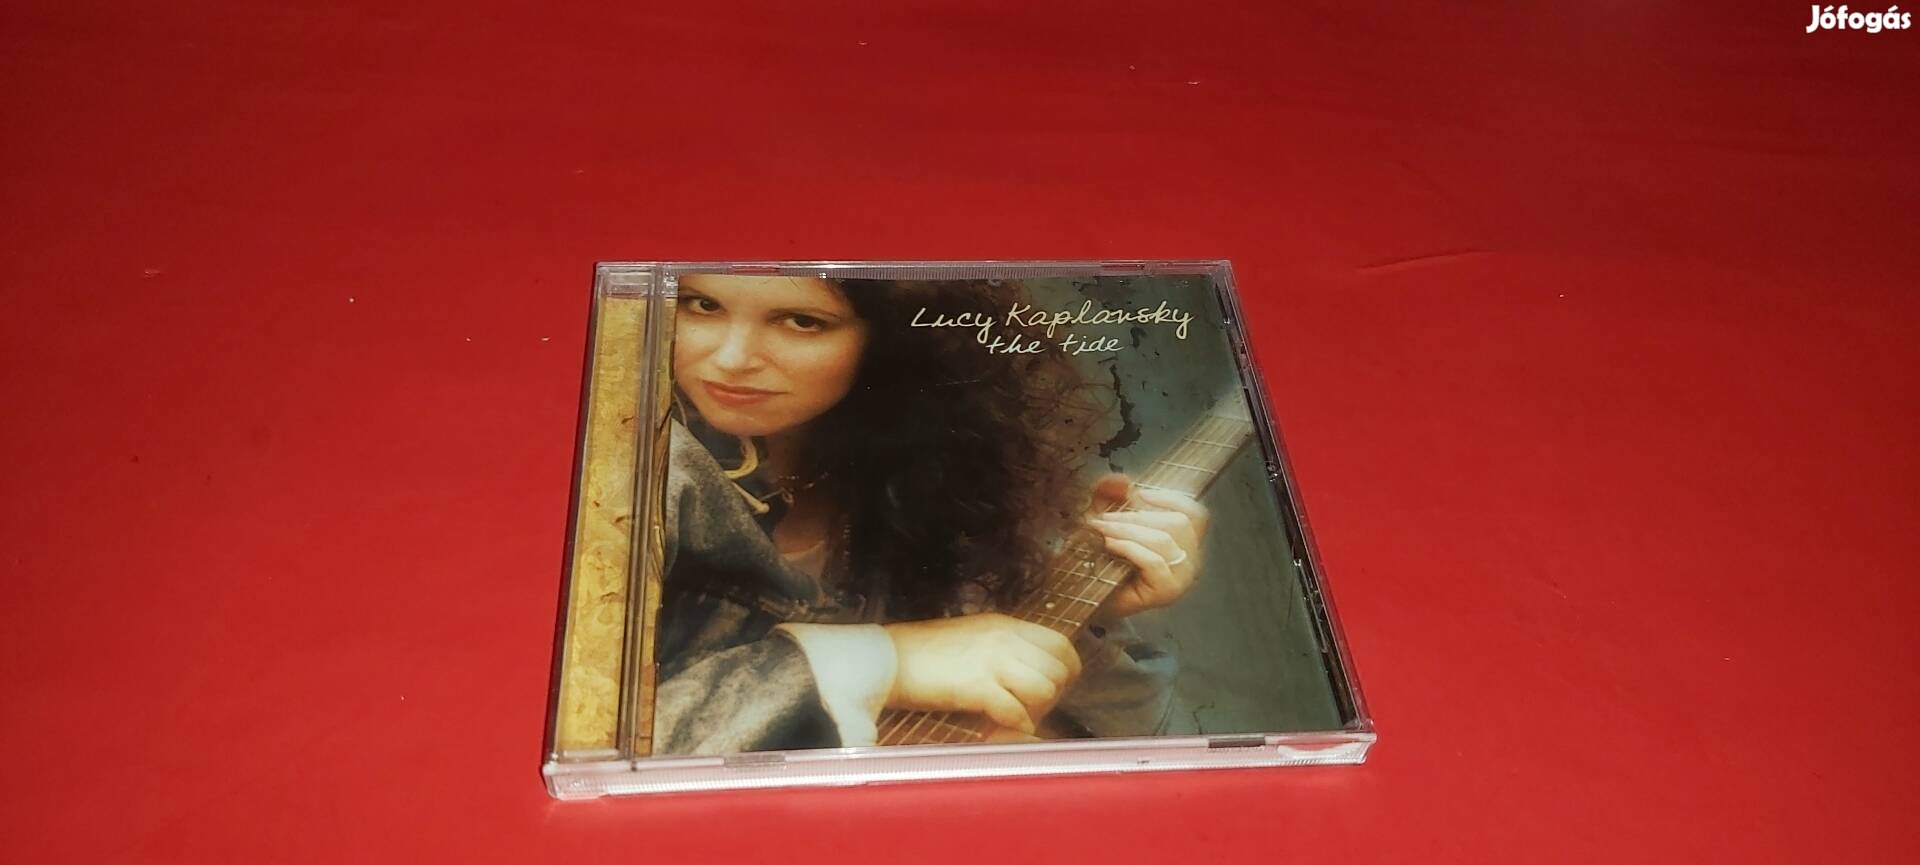 Lucy Kaplansky The tide Hdcd Cd 1994 U.S.A. Country/Folk/Rock